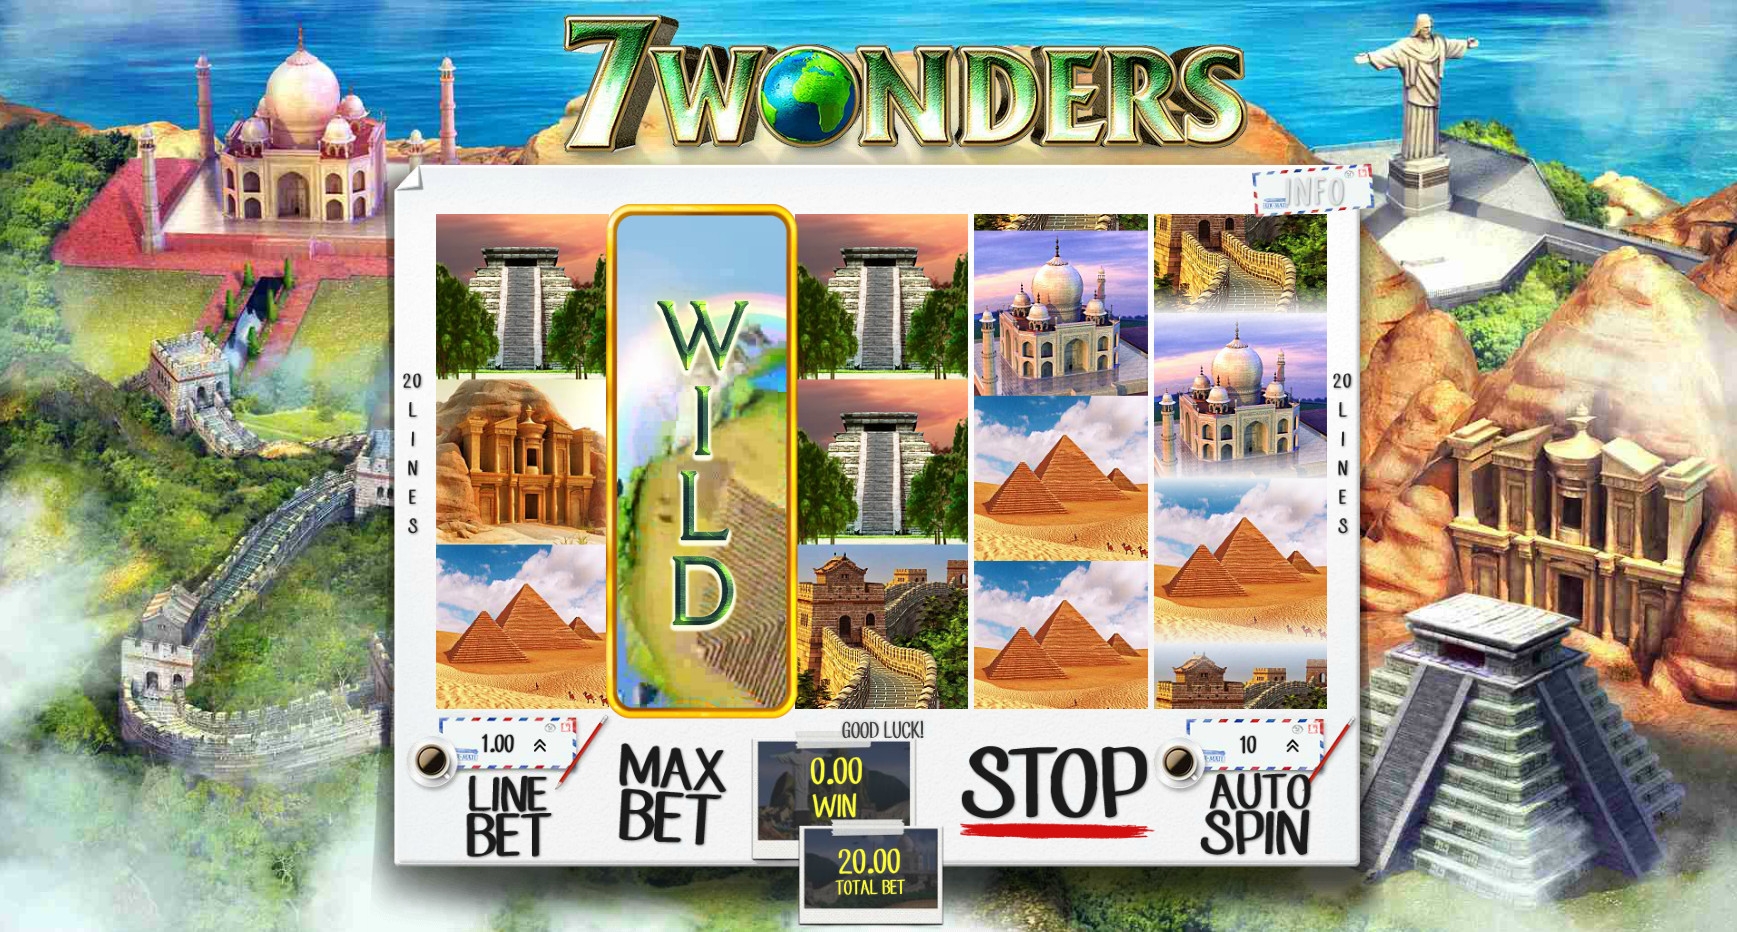 7 Wonders (7 Wonders) from category Slots